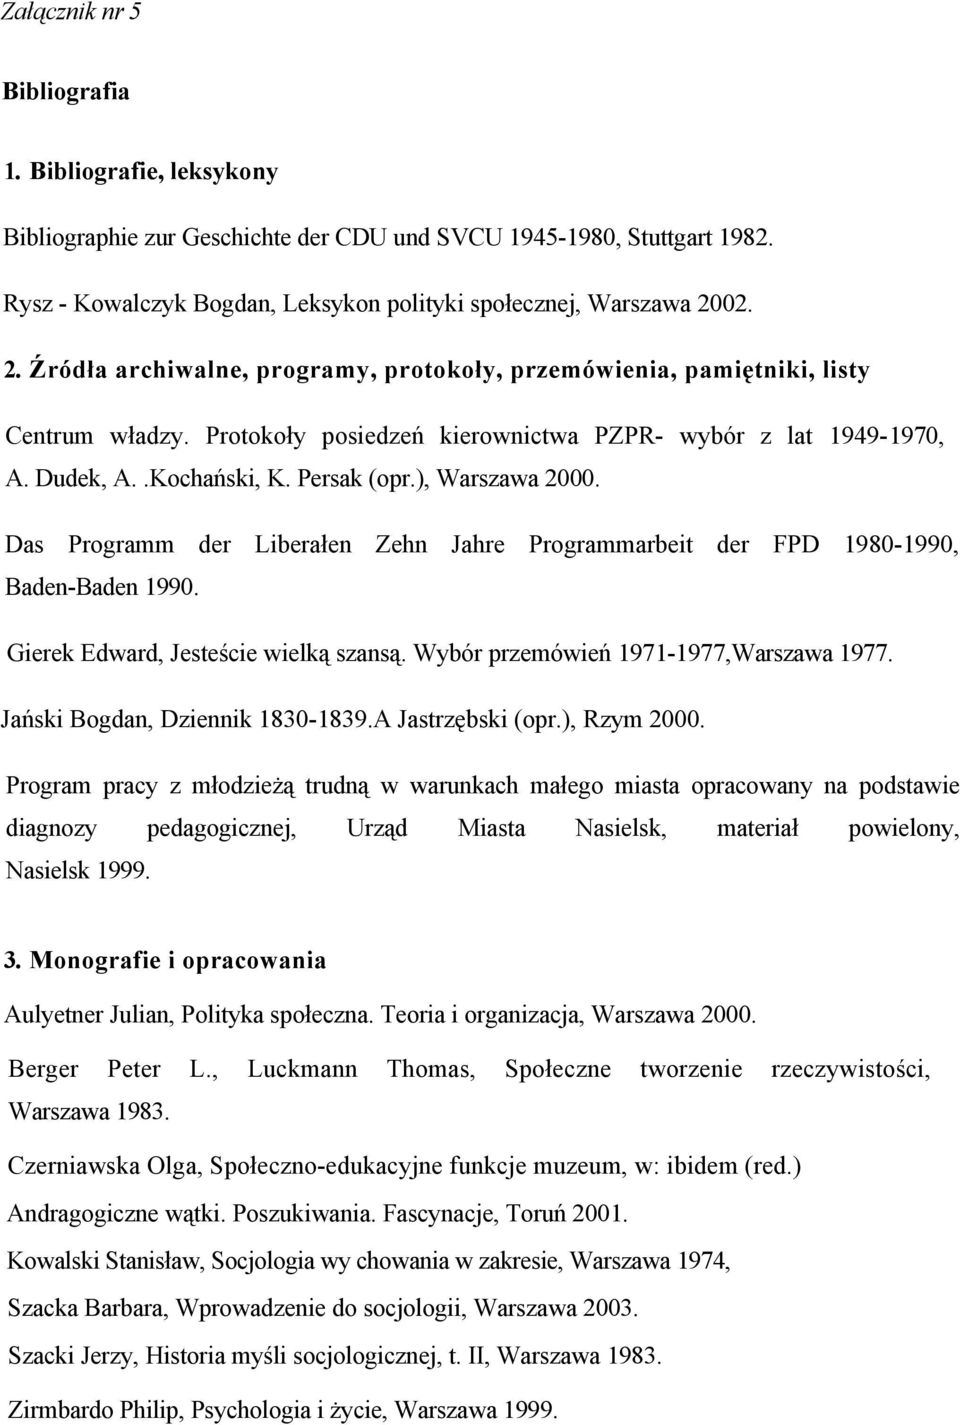 ), Warszawa 2000. Das Programm der Liberałen Zehn Jahre Programmarbeit der FPD 1980-1990, Baden-Baden 1990. Gierek Edward, Jesteście wielką szansą. Wybór przemówień 1971-1977,Warszawa 1977.